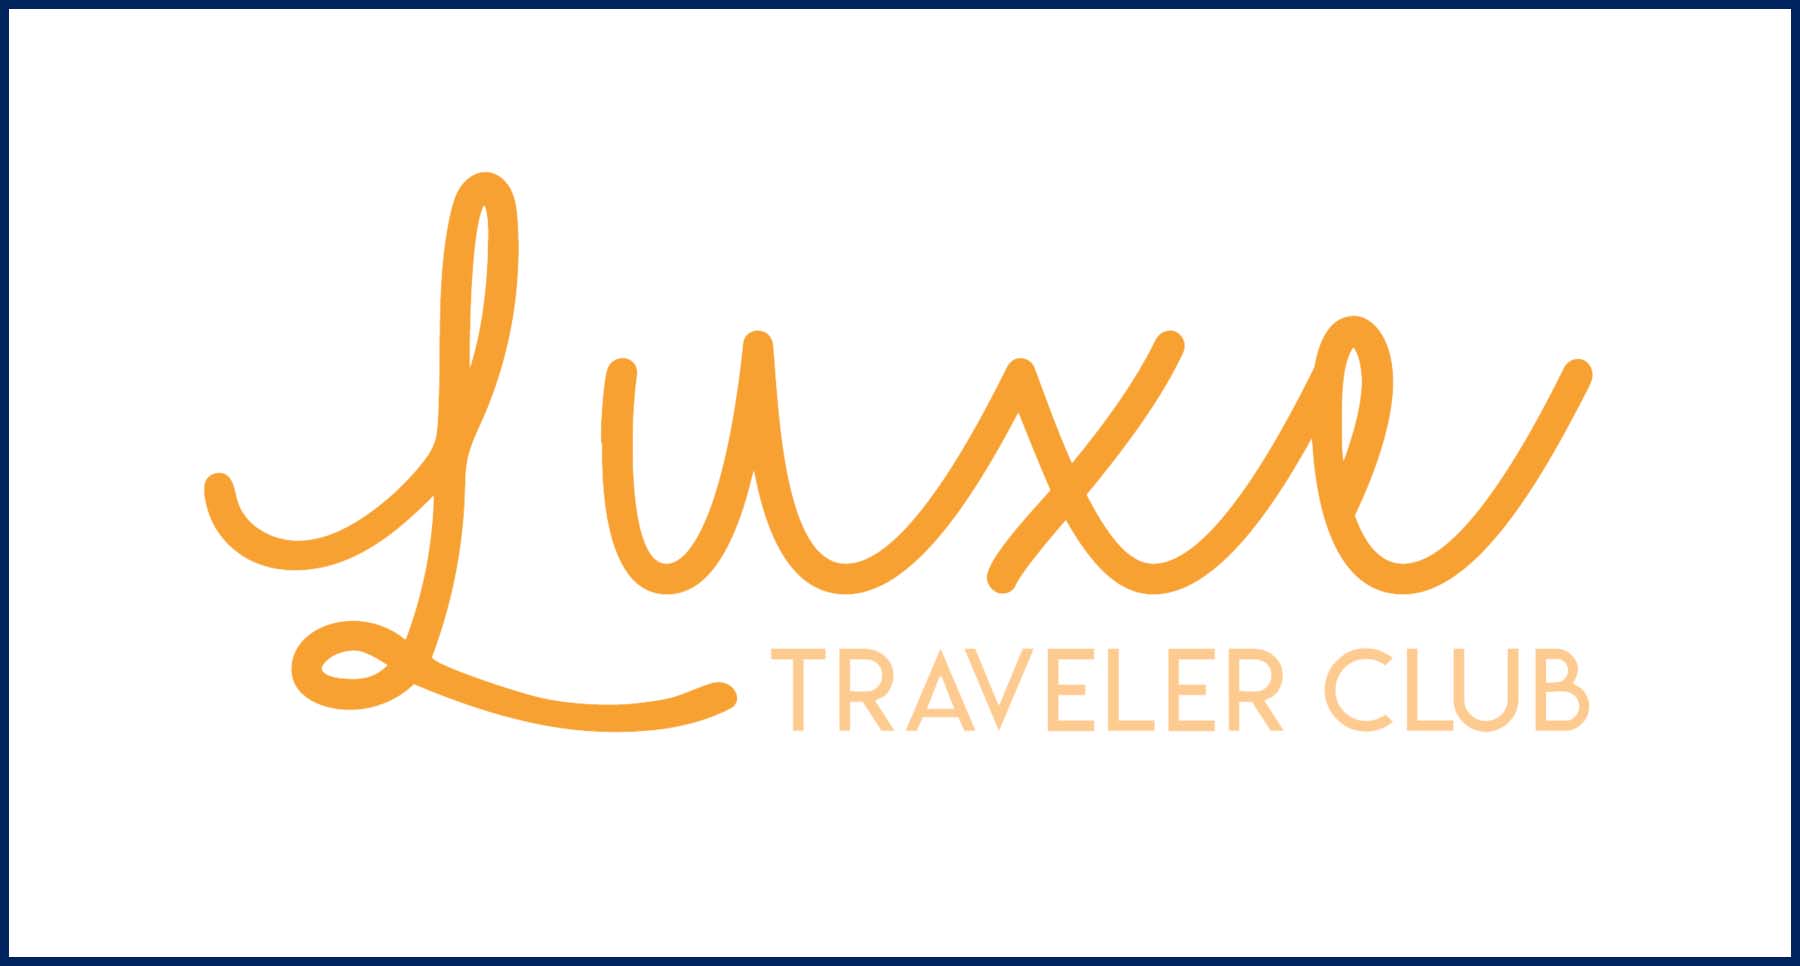 Luxe Traveler Club